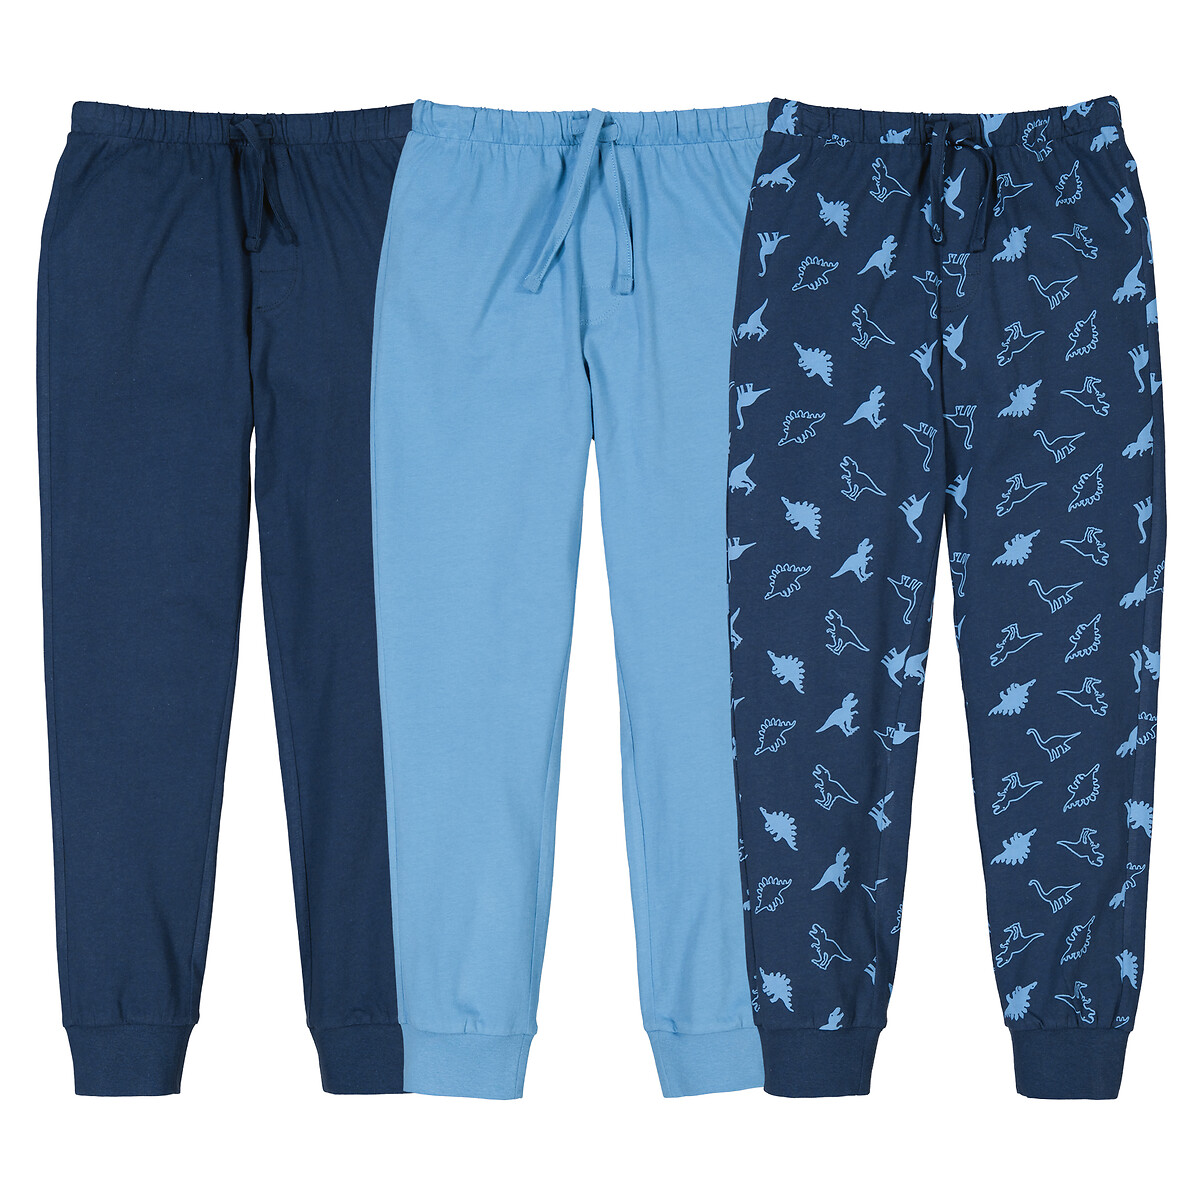 Комплект из трех пижамных брюк La Redoute 12 лет -150 см синий LaRedoute, размер 12